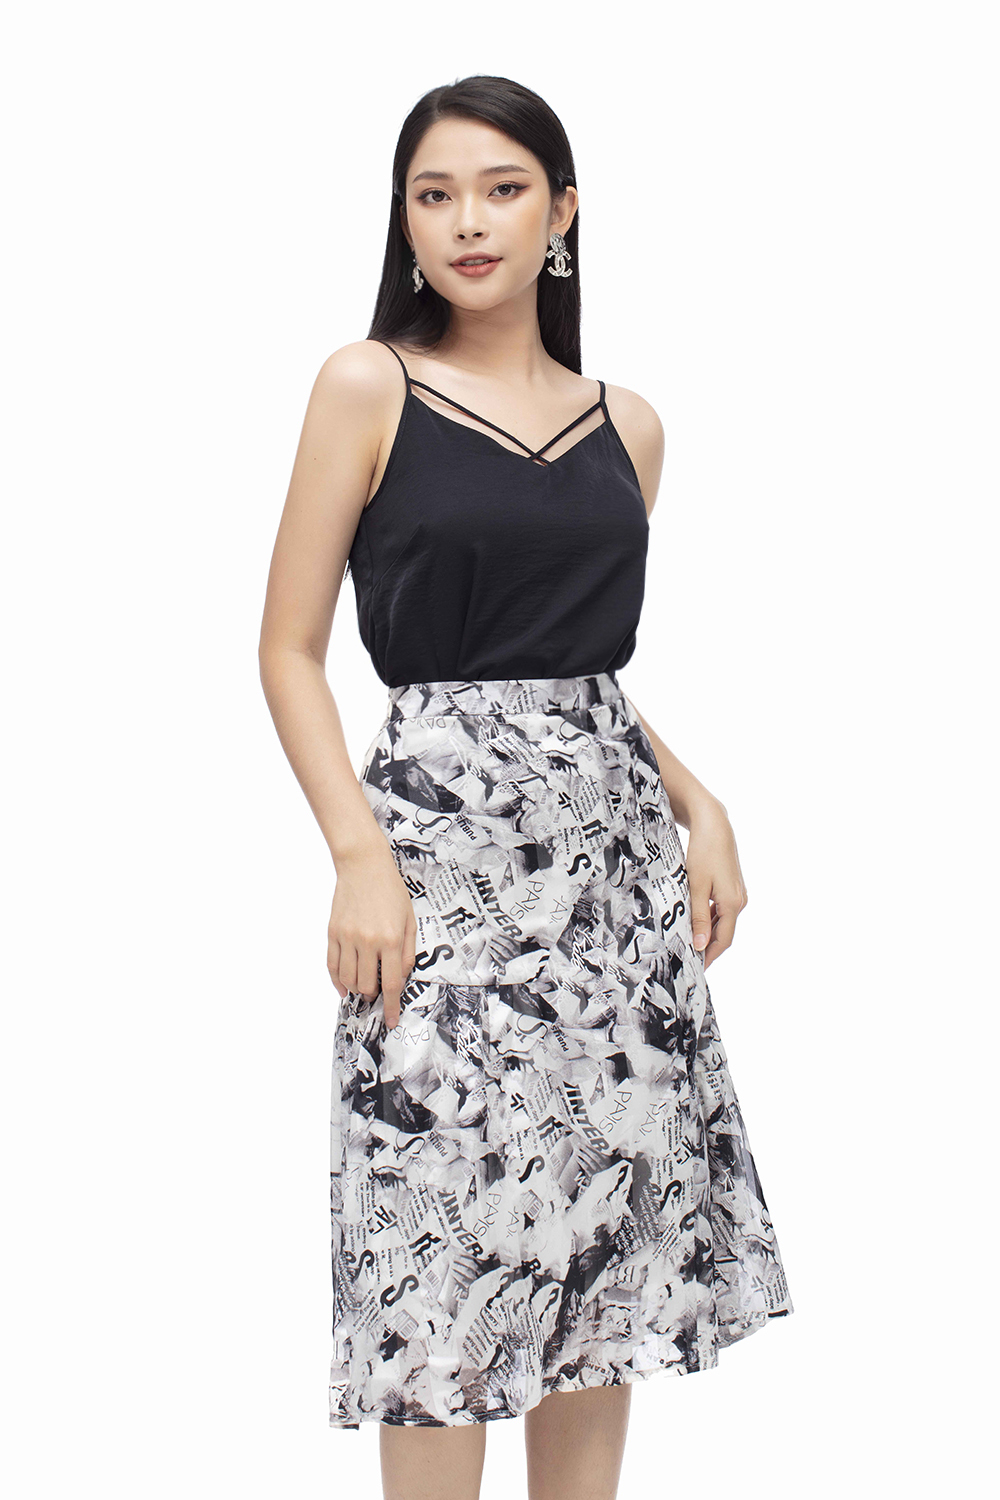 Đầm yếm chân váy xòe họa tiết đen trắng - Giá 115.000đ tại Mua Chung